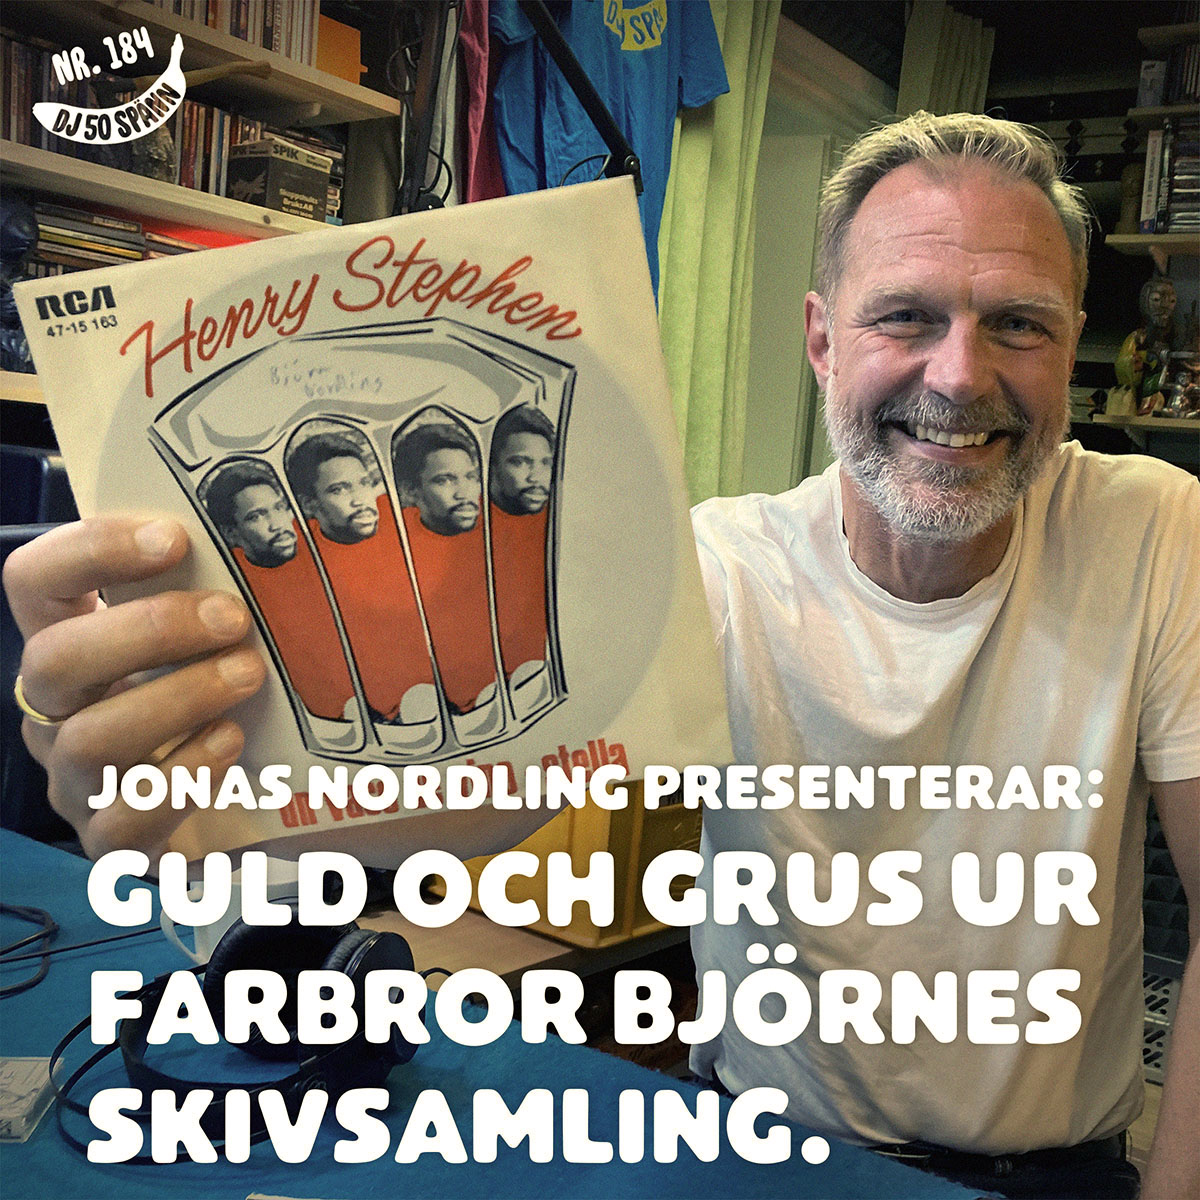 Jonas Nordling presenterar: Farbror Björnes skivor